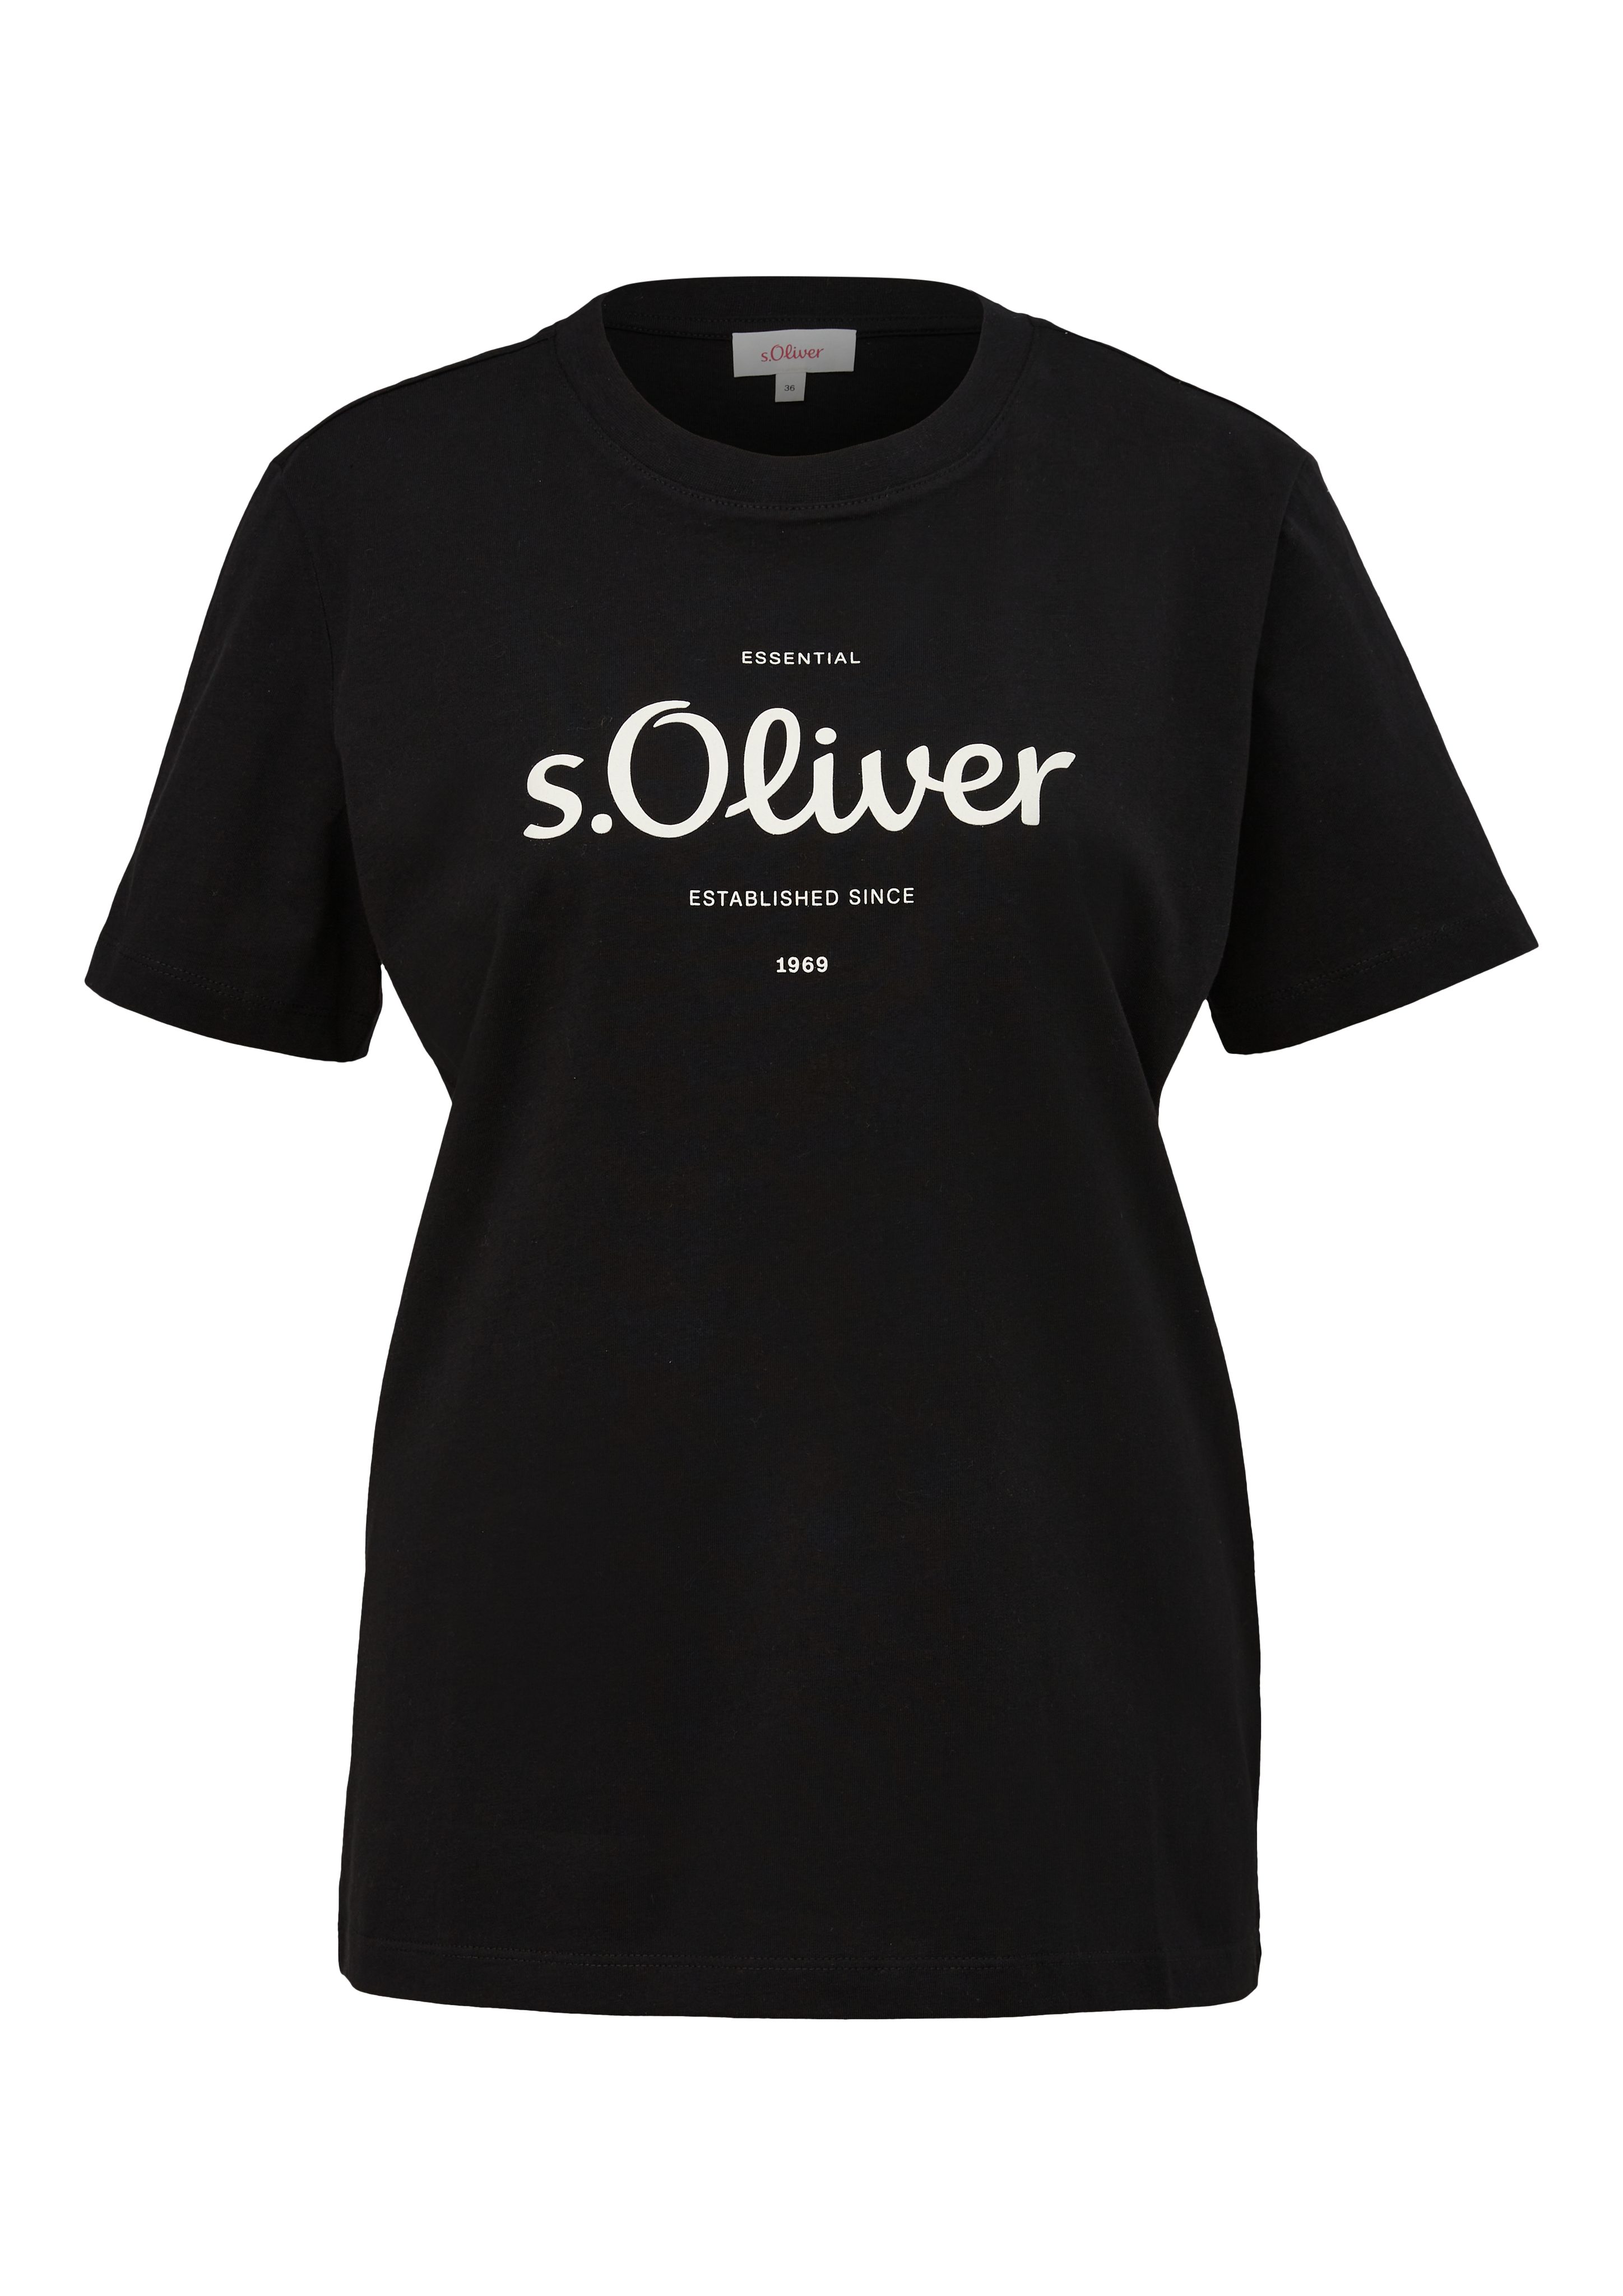 s.Oliver T-Shirt mit grey/black Logodruck vorne